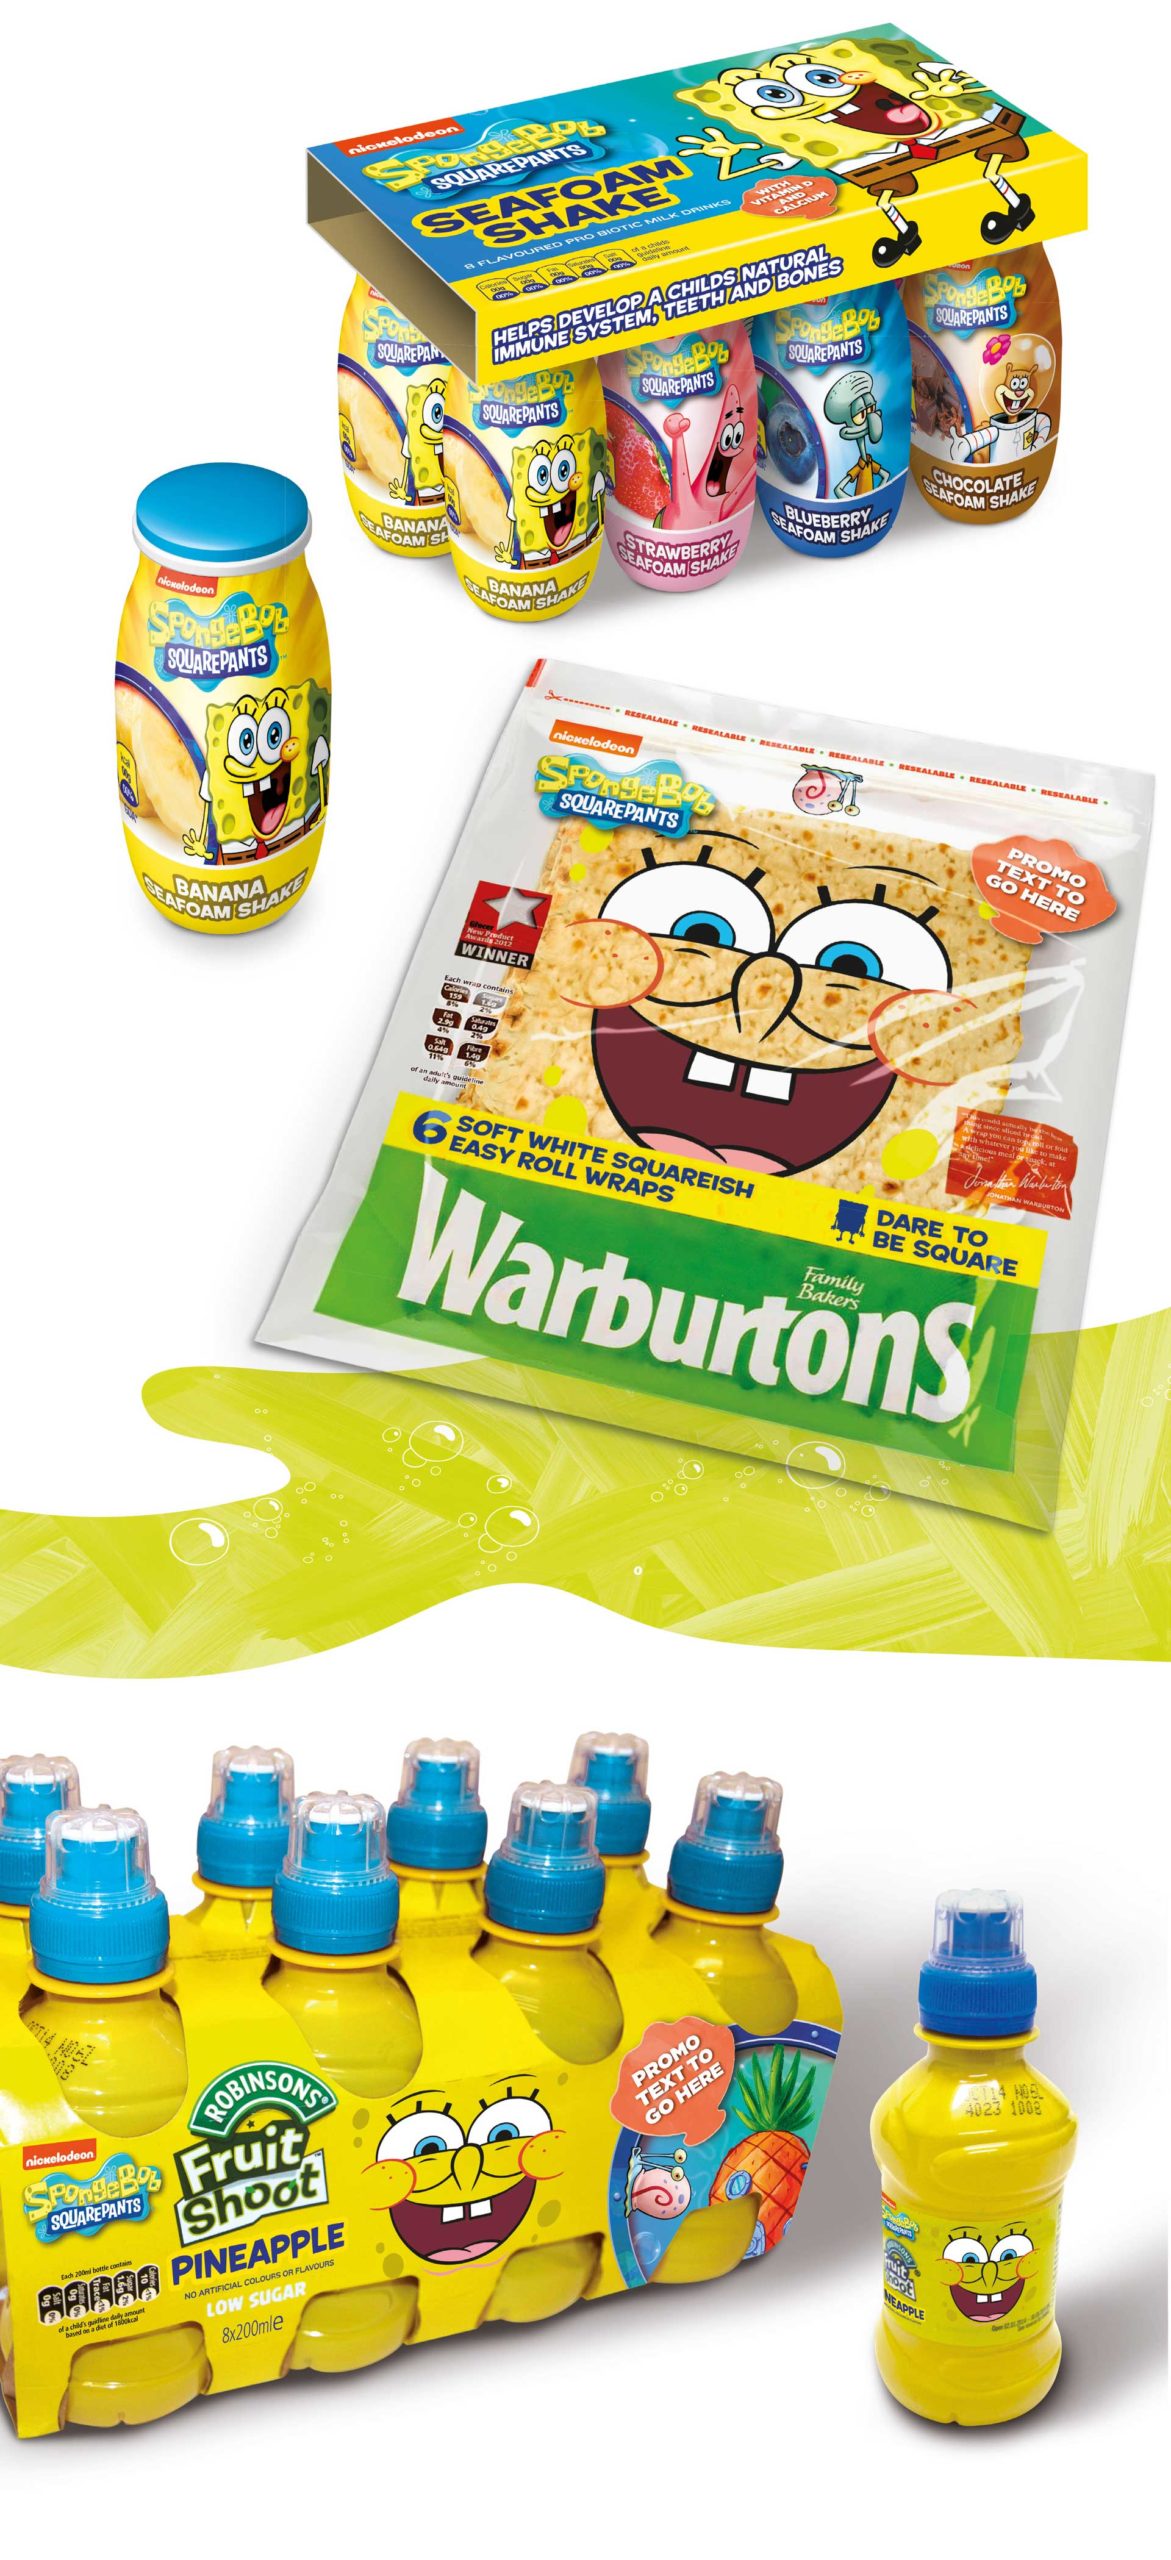 Glendale Creative Nickelodeon Spongebob Food Packaging Design